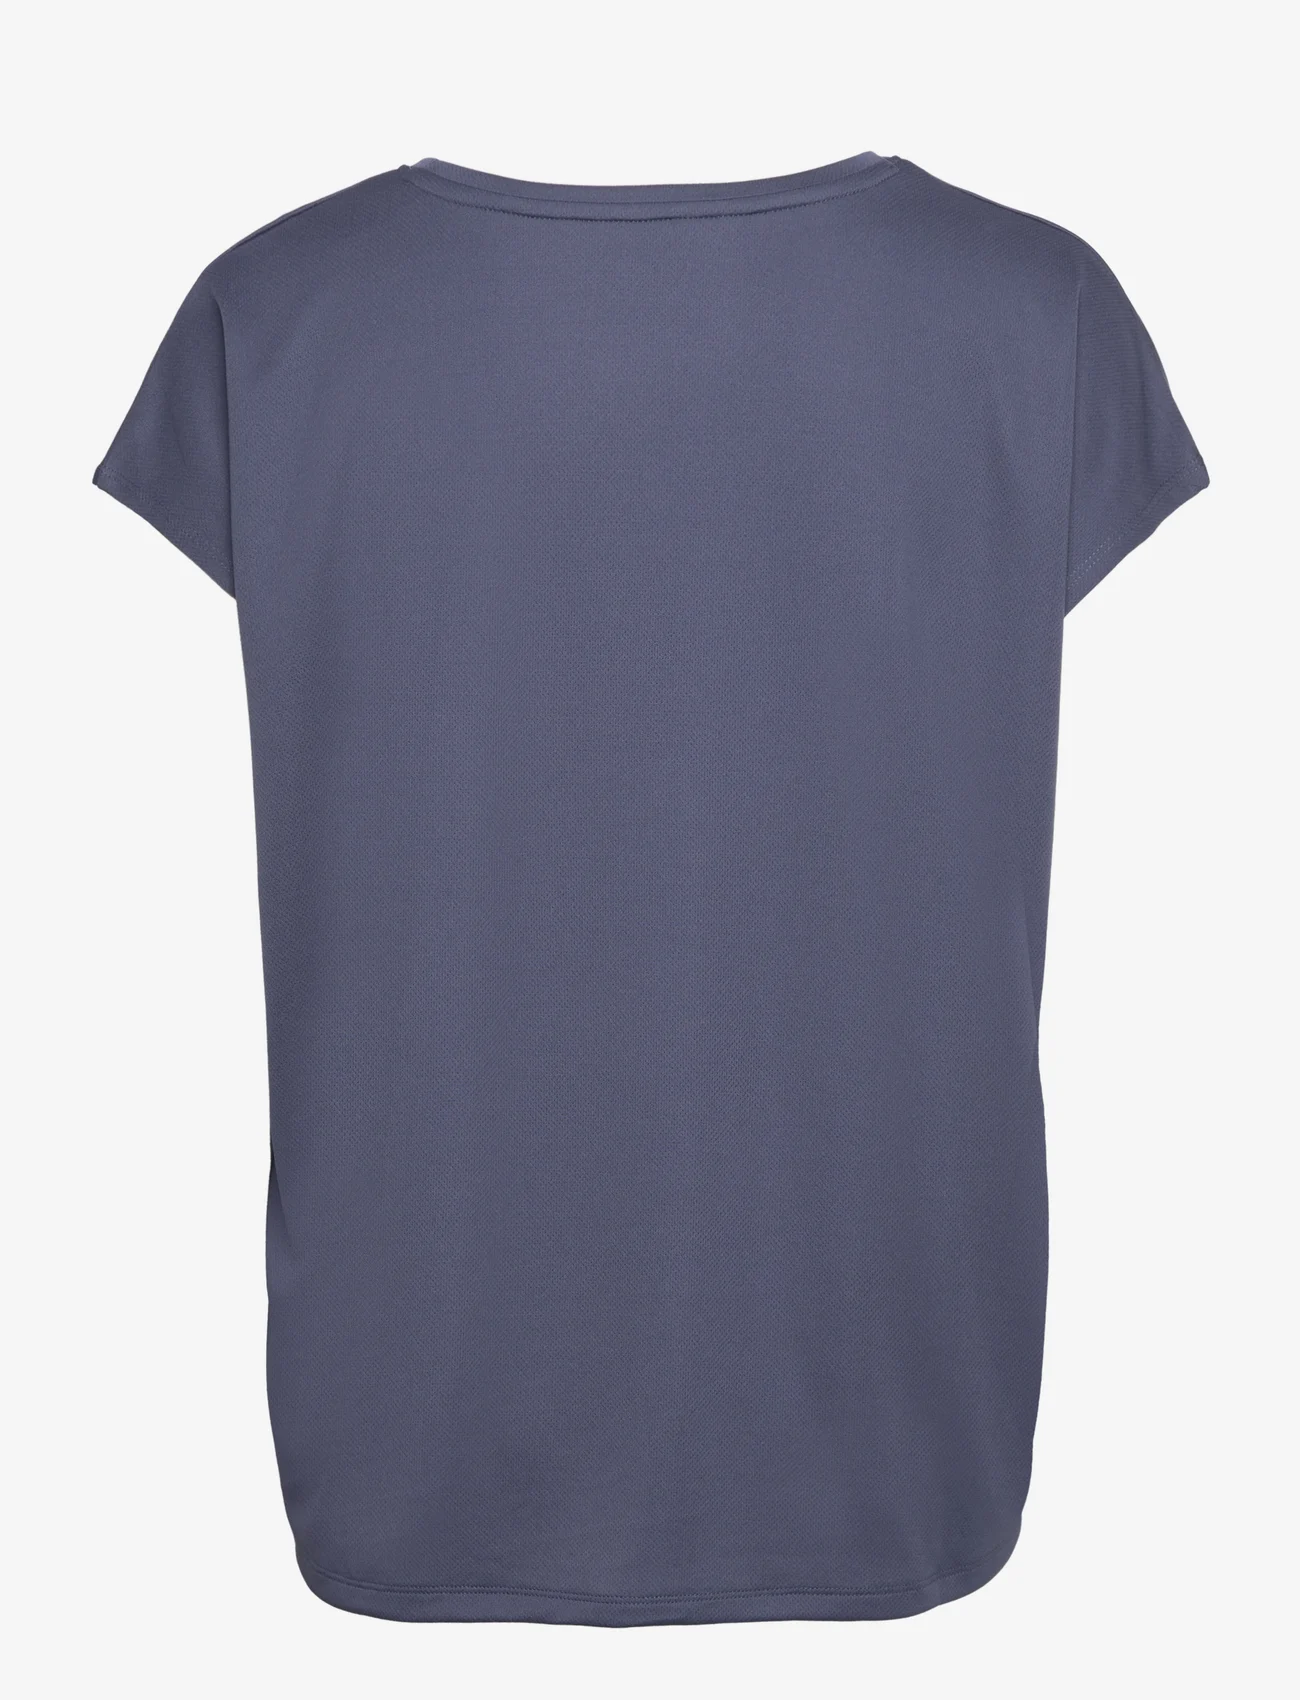 ZEBDIA - Women Loose Fit T-Shirt - najniższe ceny - navy - 1